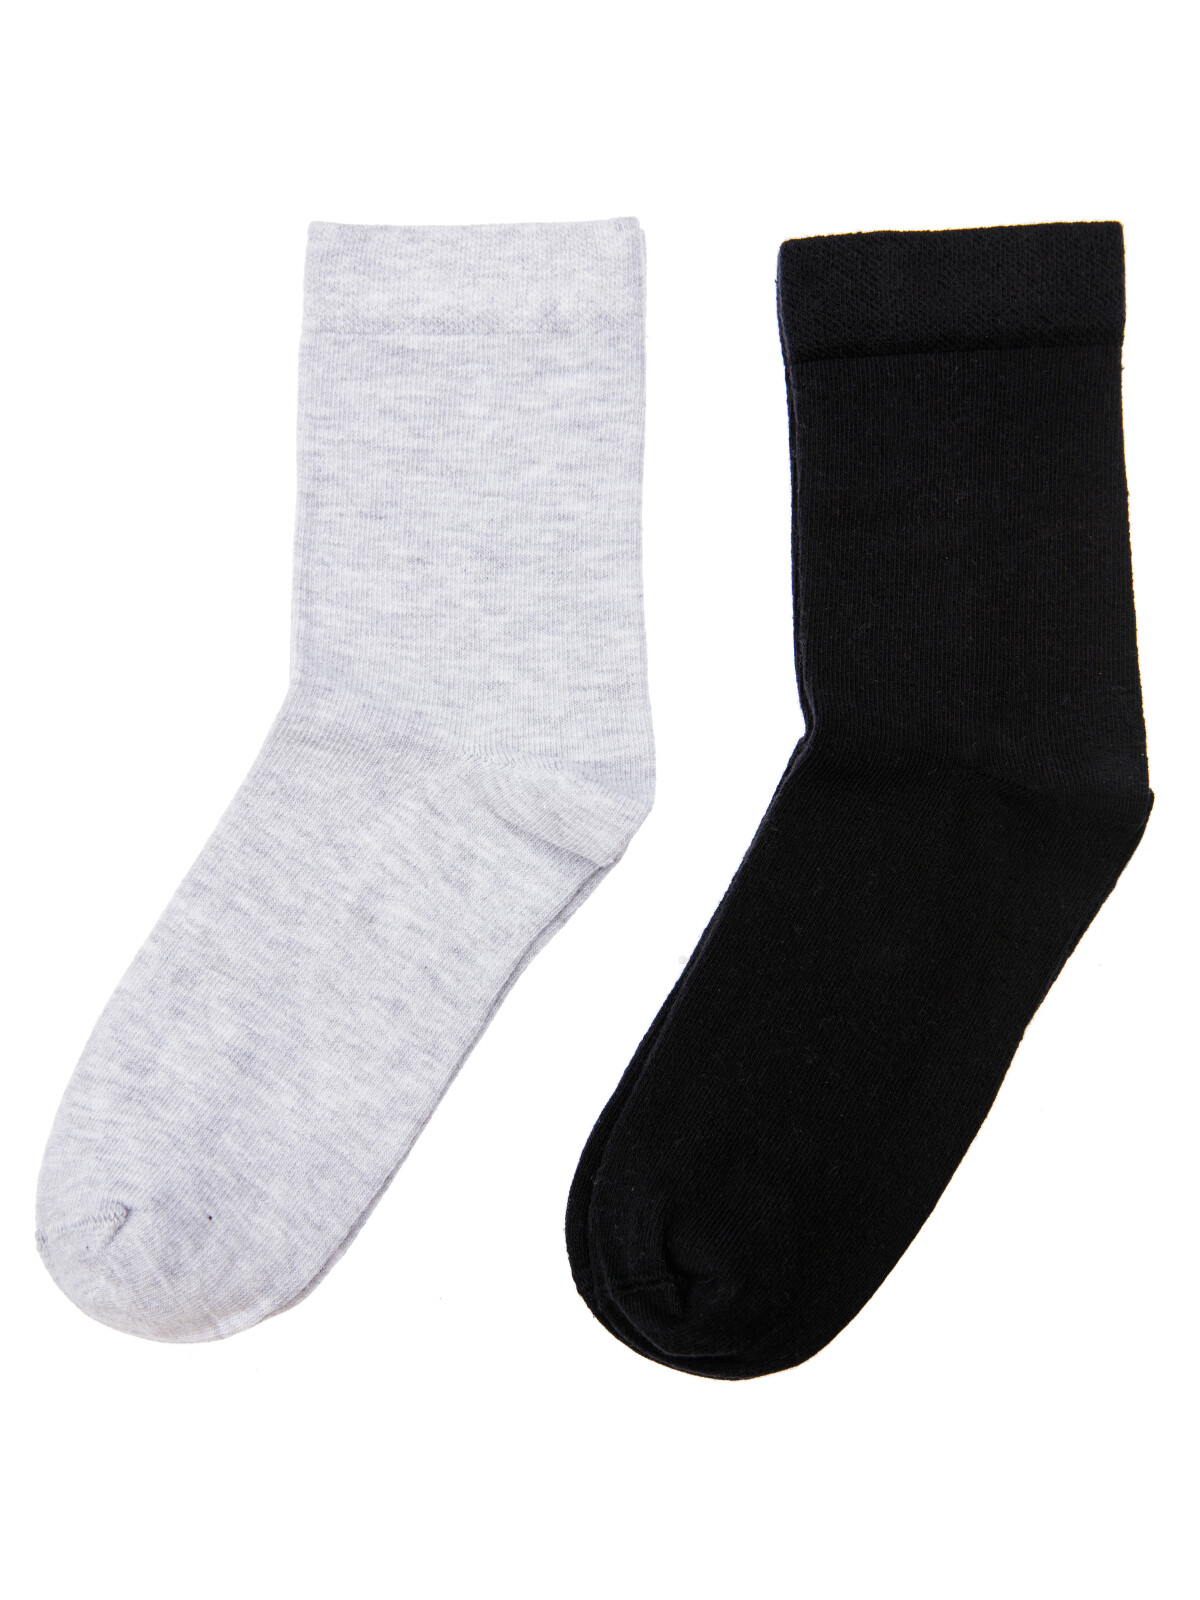 Носки трикотажные для мальчиков PlayToday, 2 пары в комплекте, серый меланж,черный, 34-36